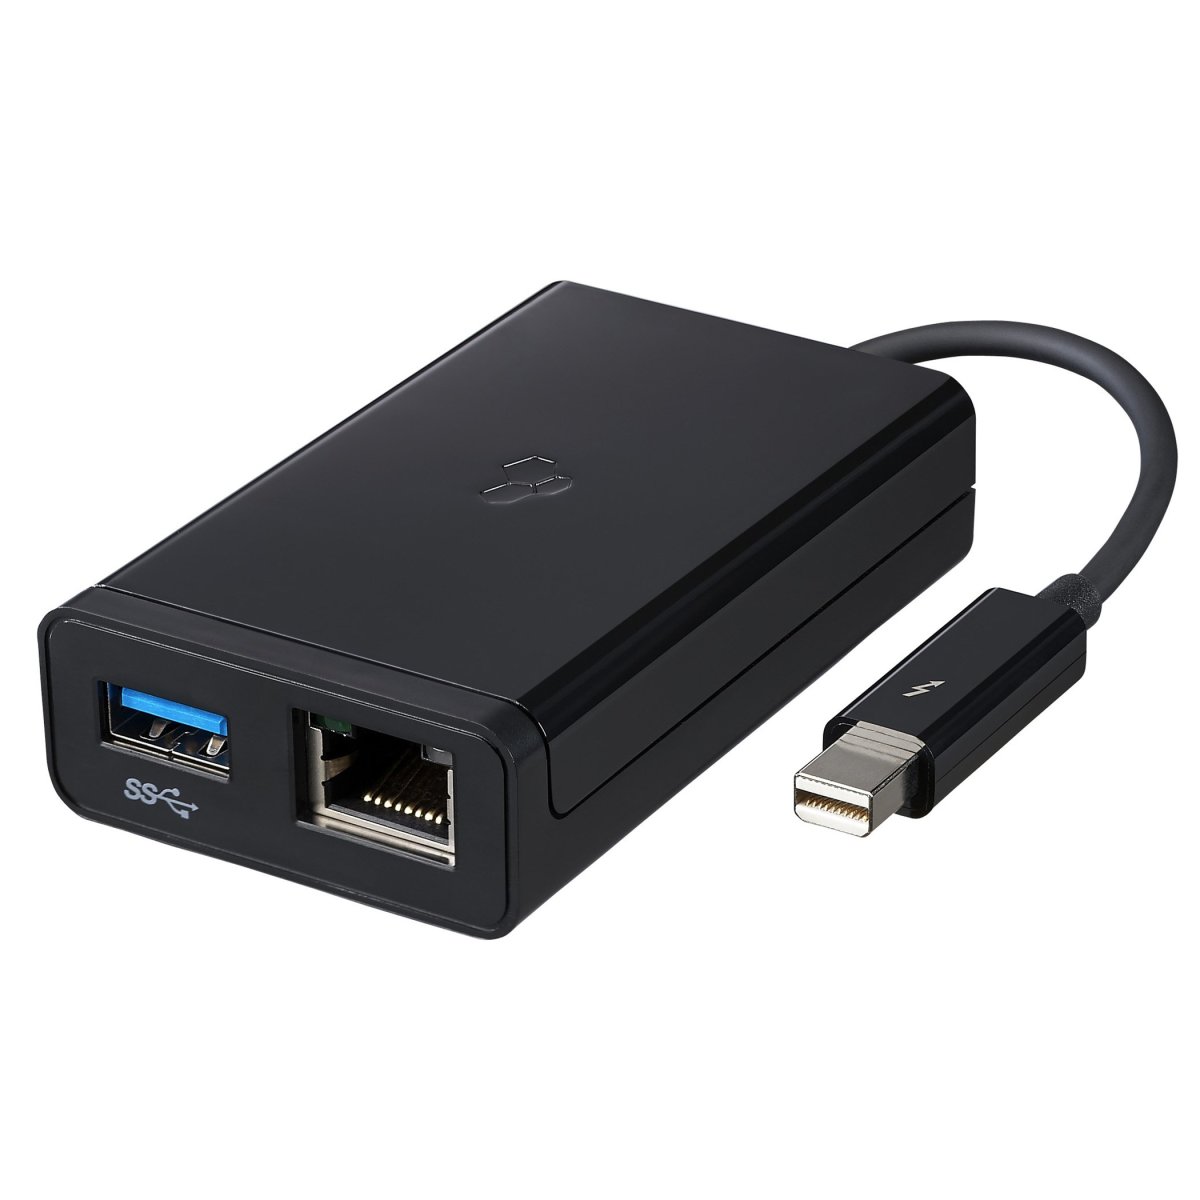 Kanex Thunderbolt to Gigabit Ethernet with USB 3.0 Adapter